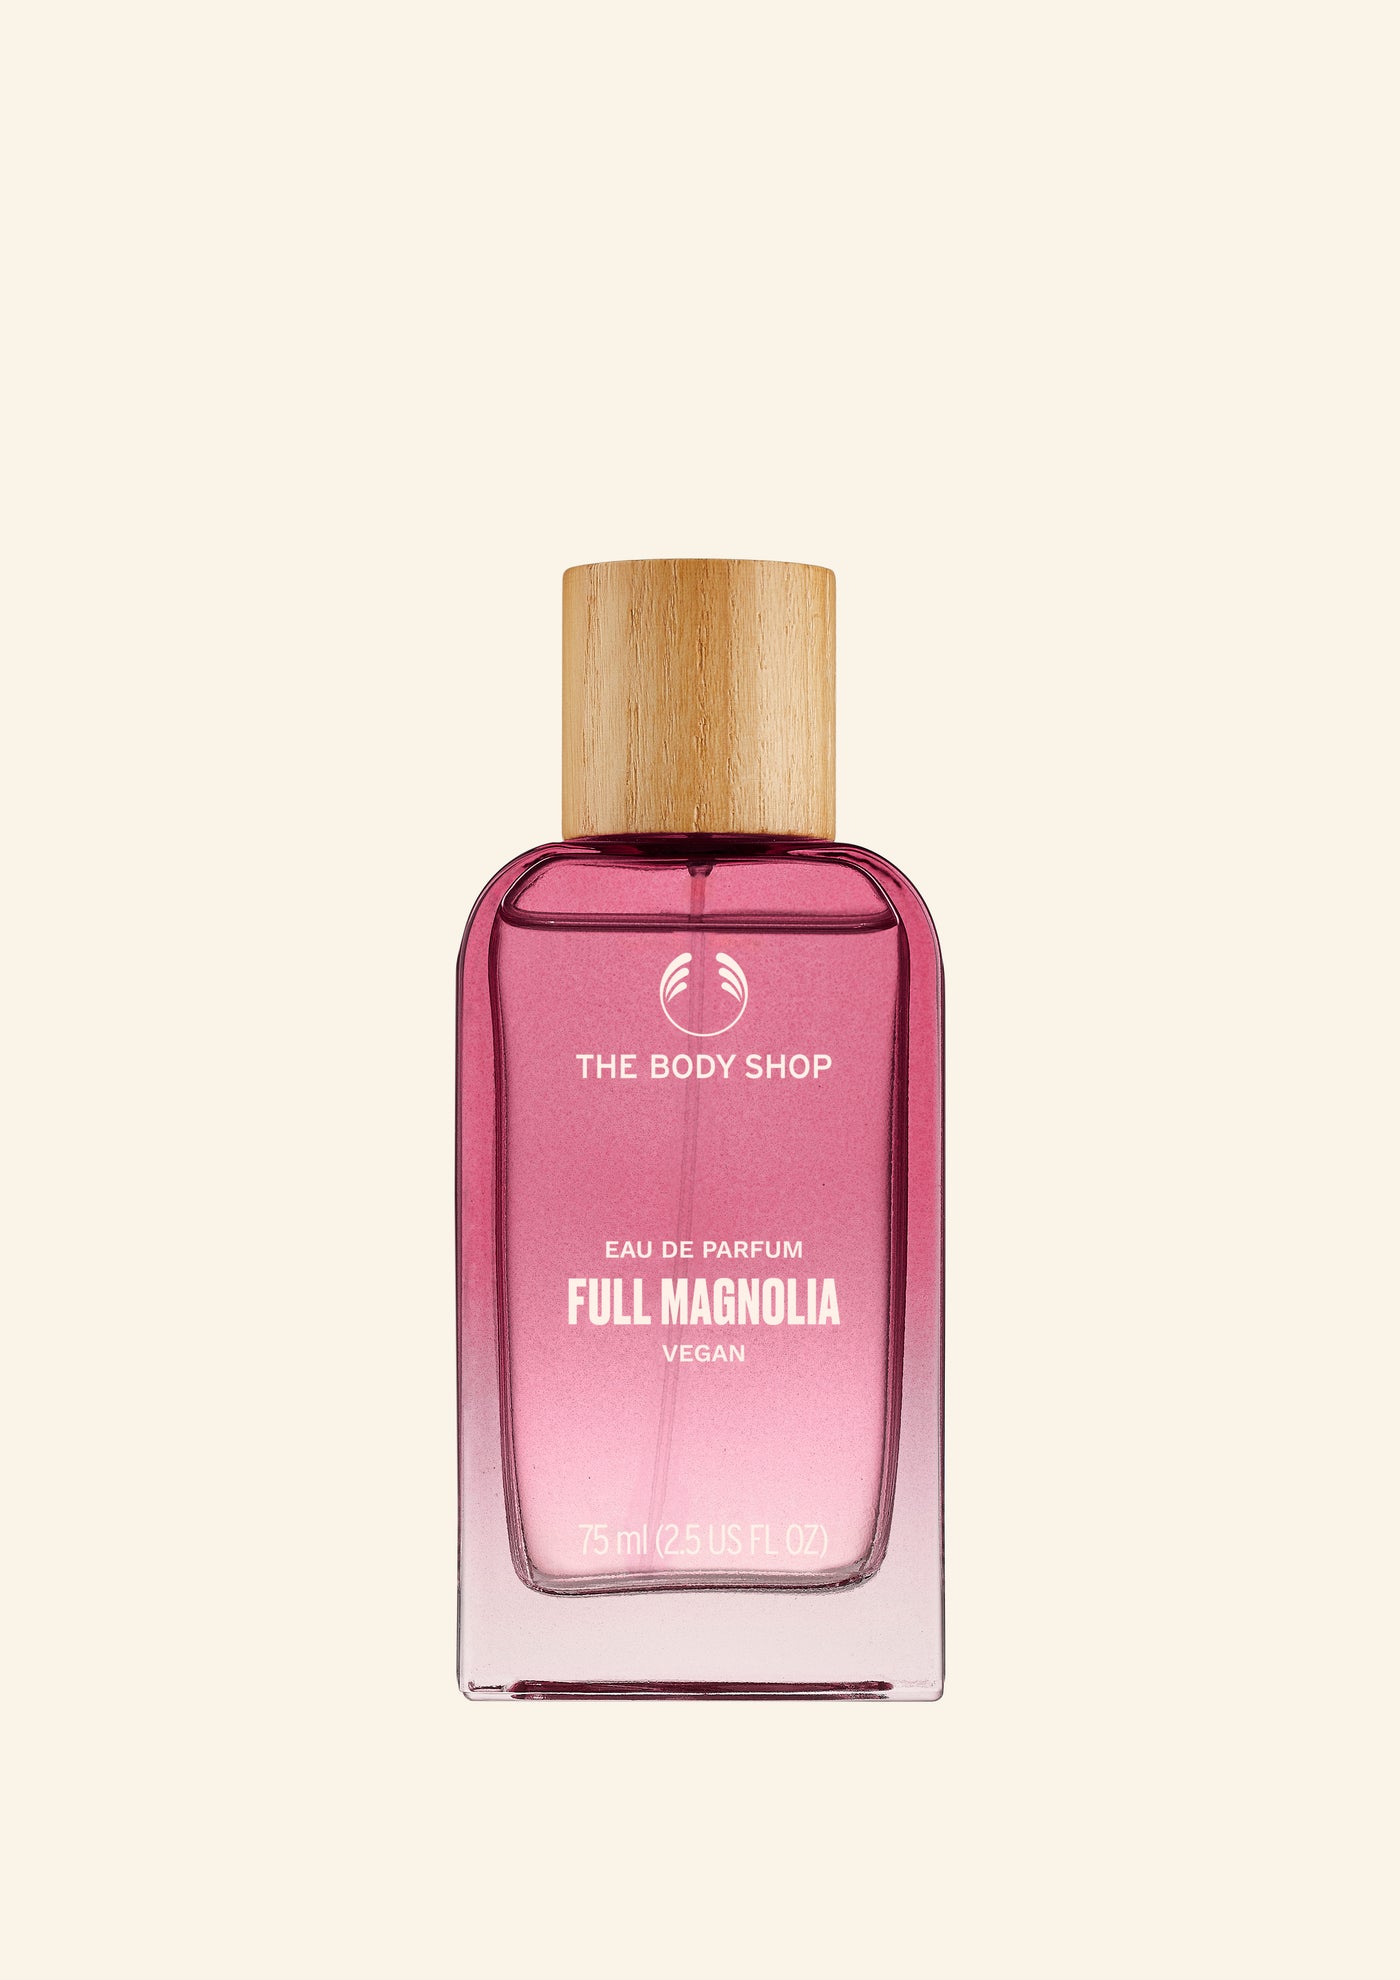 Full Magnolia Eau de Parfum